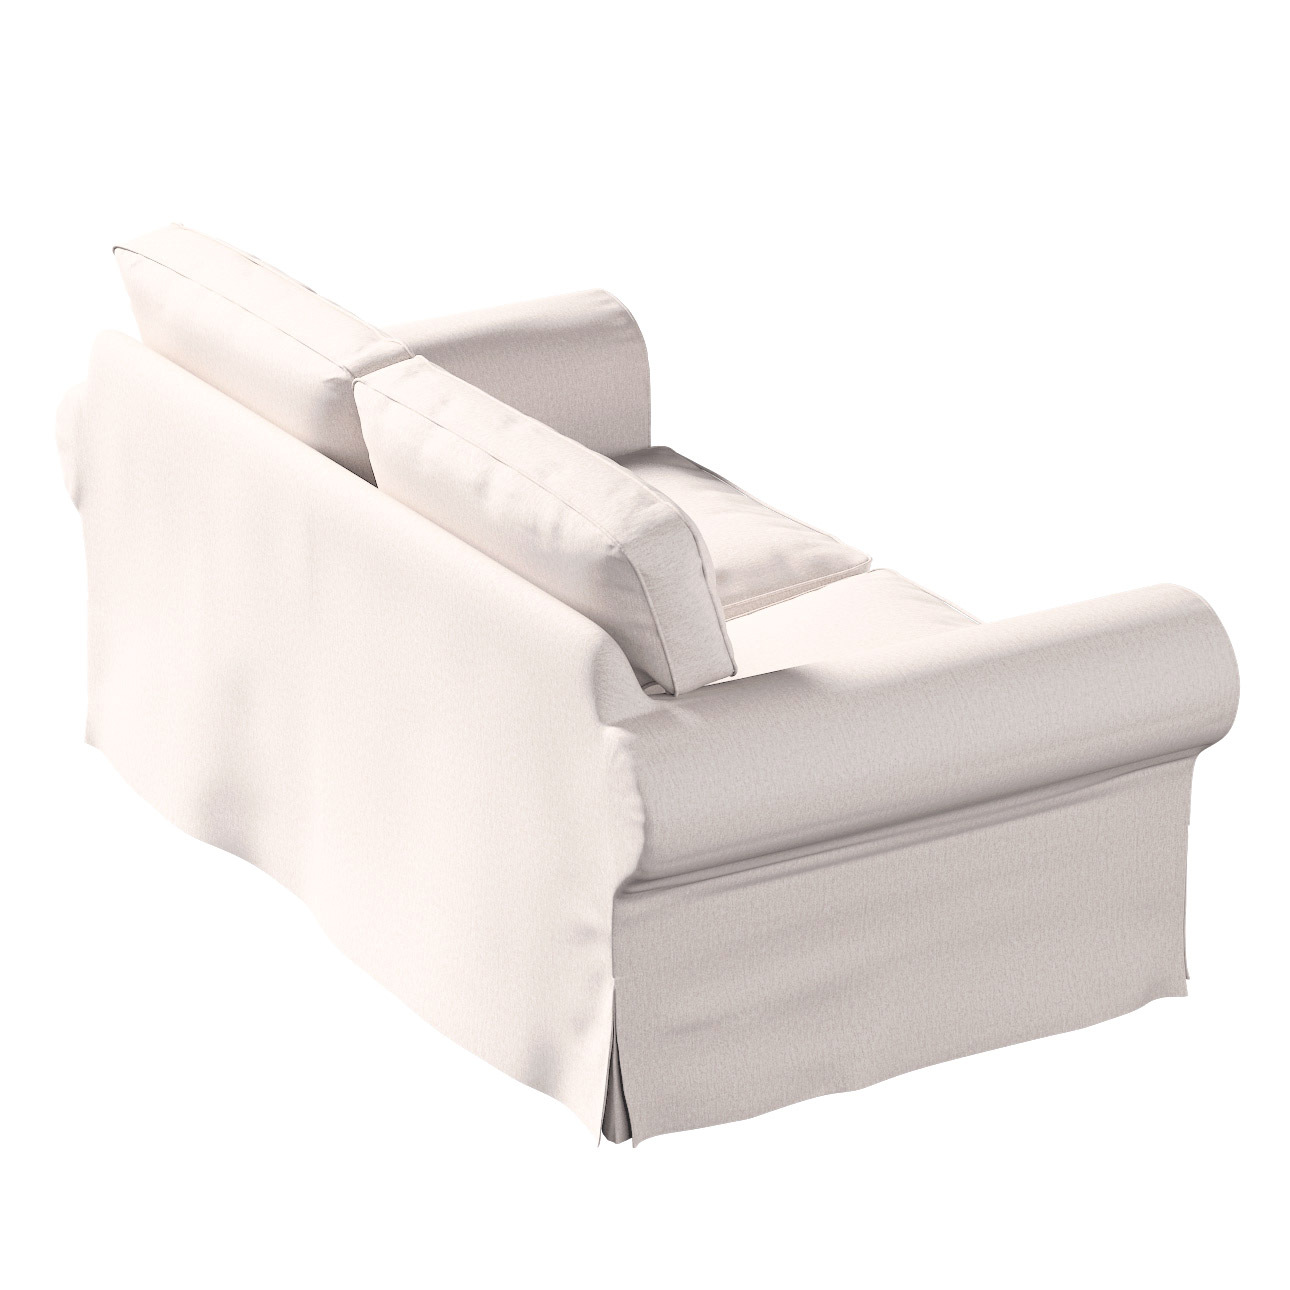 Bezug für Ektorp 2-Sitzer Schlafsofa NEUES Modell, hellbeige, Sofabezug für günstig online kaufen